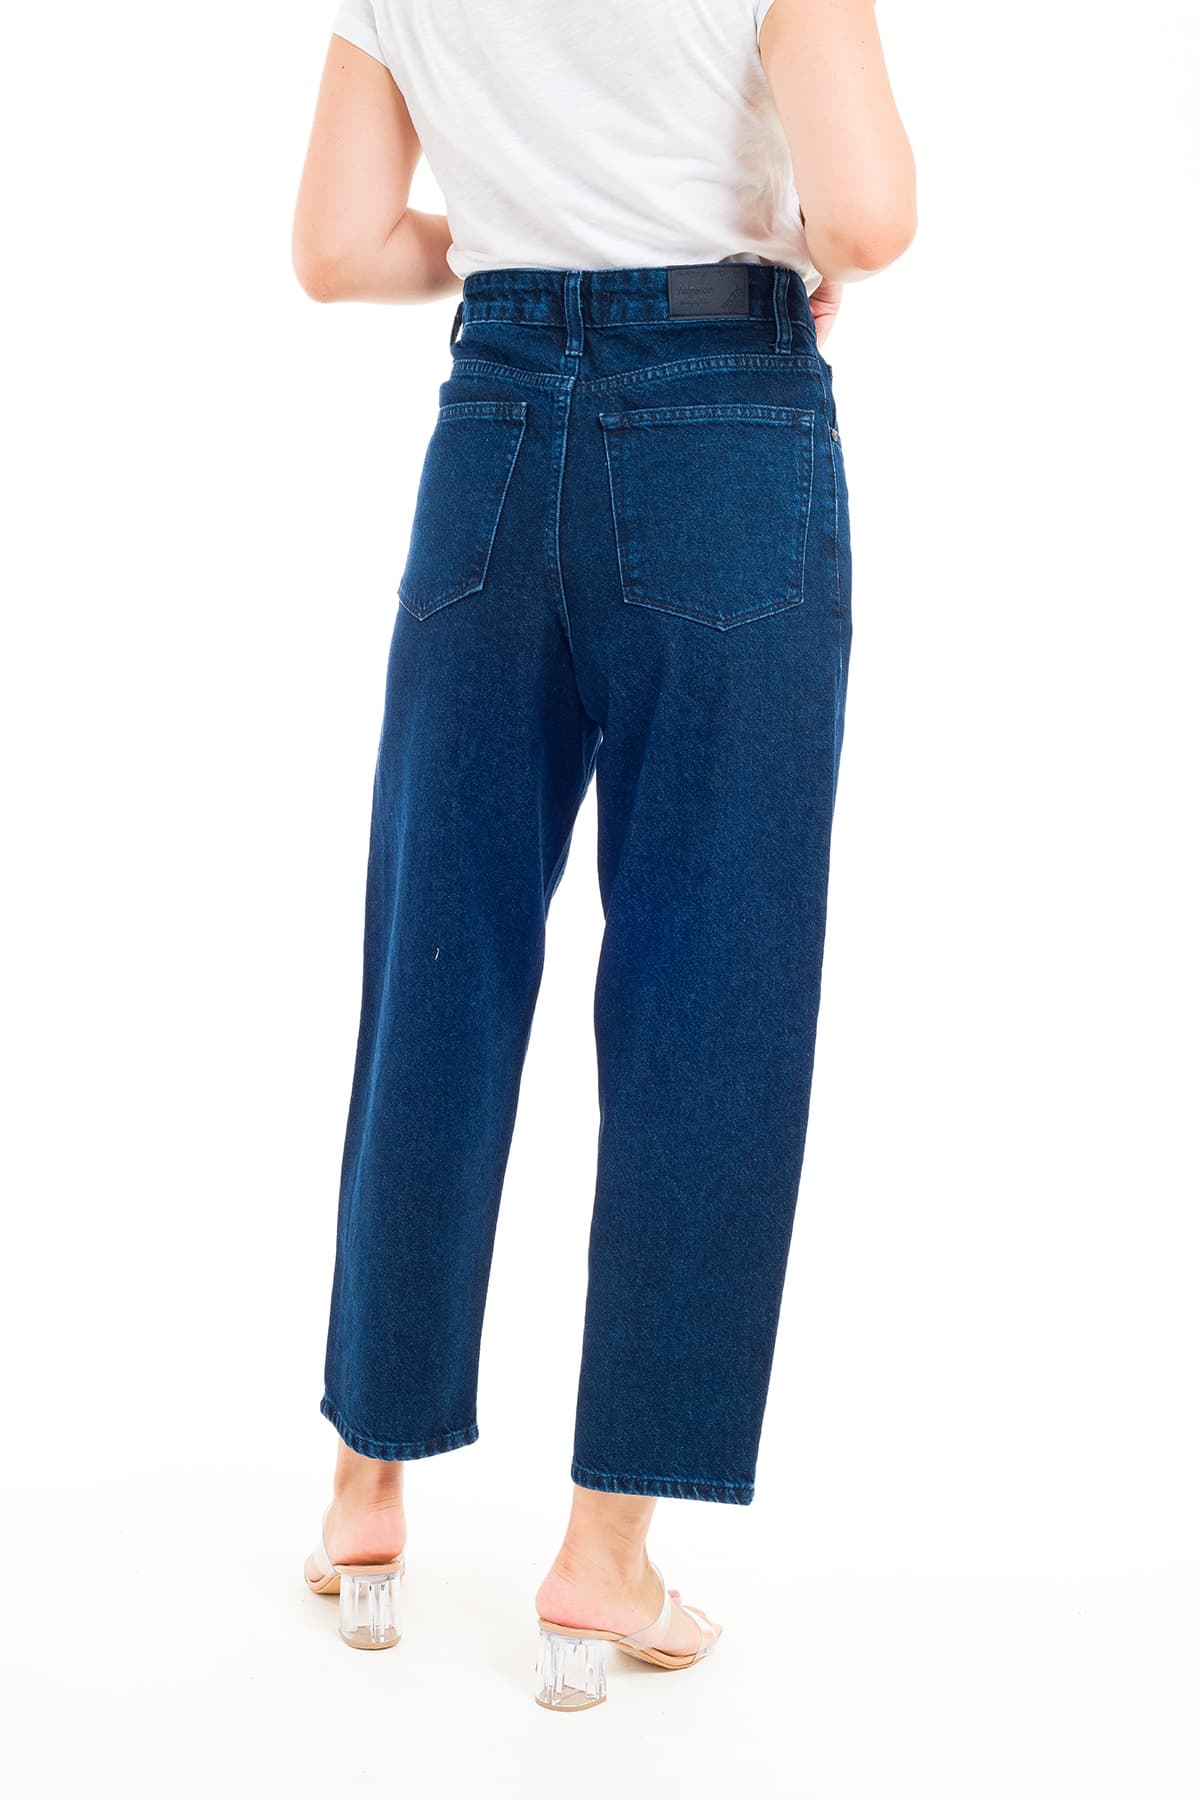 Desperado 323 Mom Jeans Model Kadın Kot Pantolon